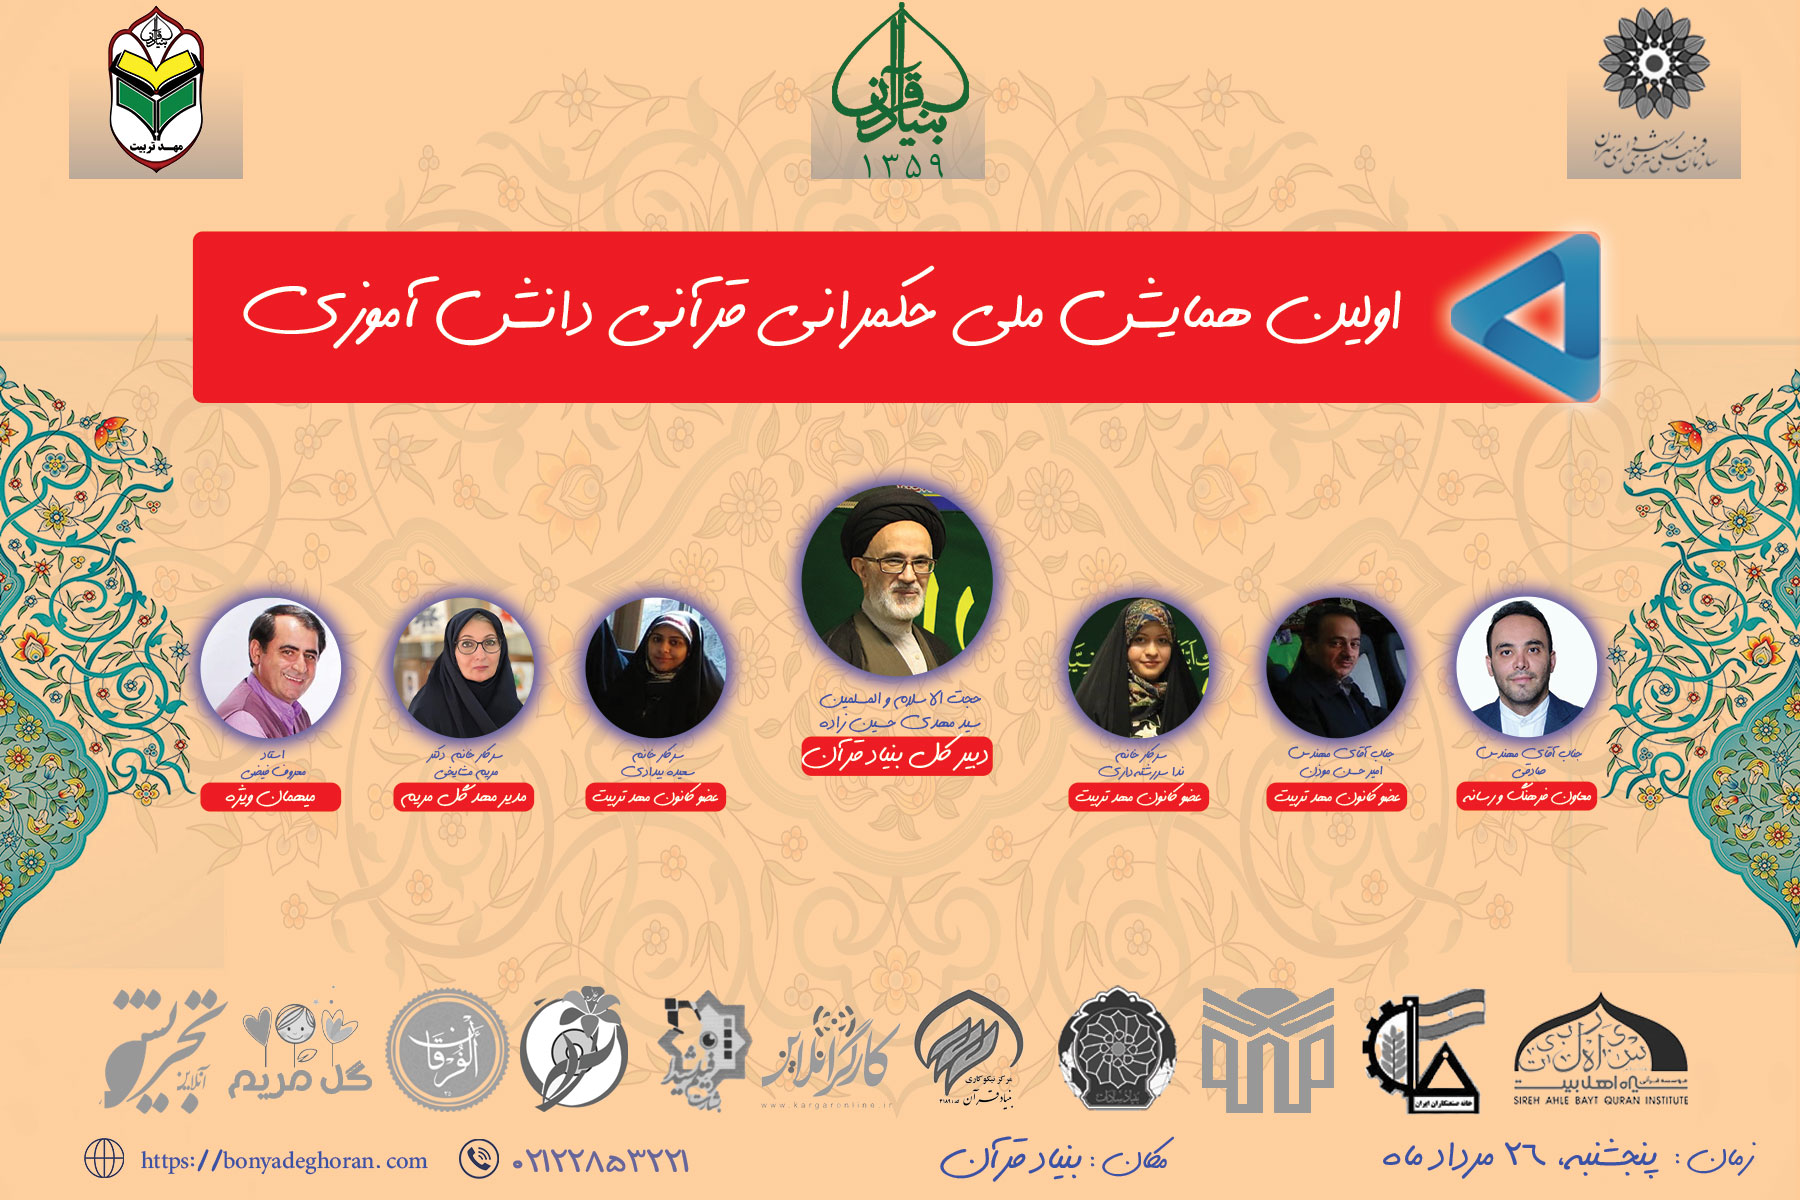 اولین نشست حکمرانی قرآنی بنیادقرآن در تهران